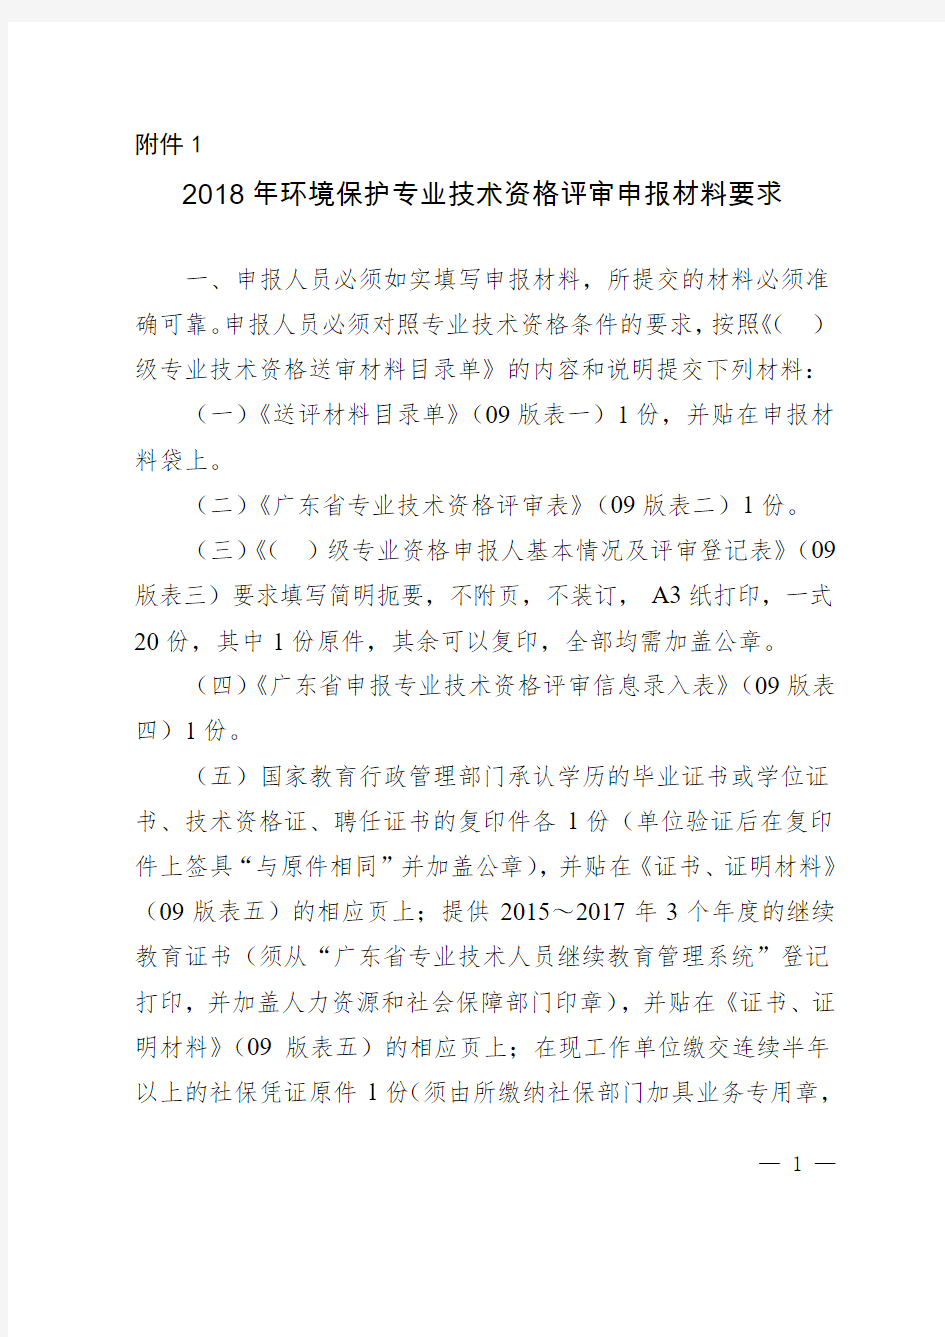 广东省环保厅关于2018年环境保护专业技术资格评审的通知